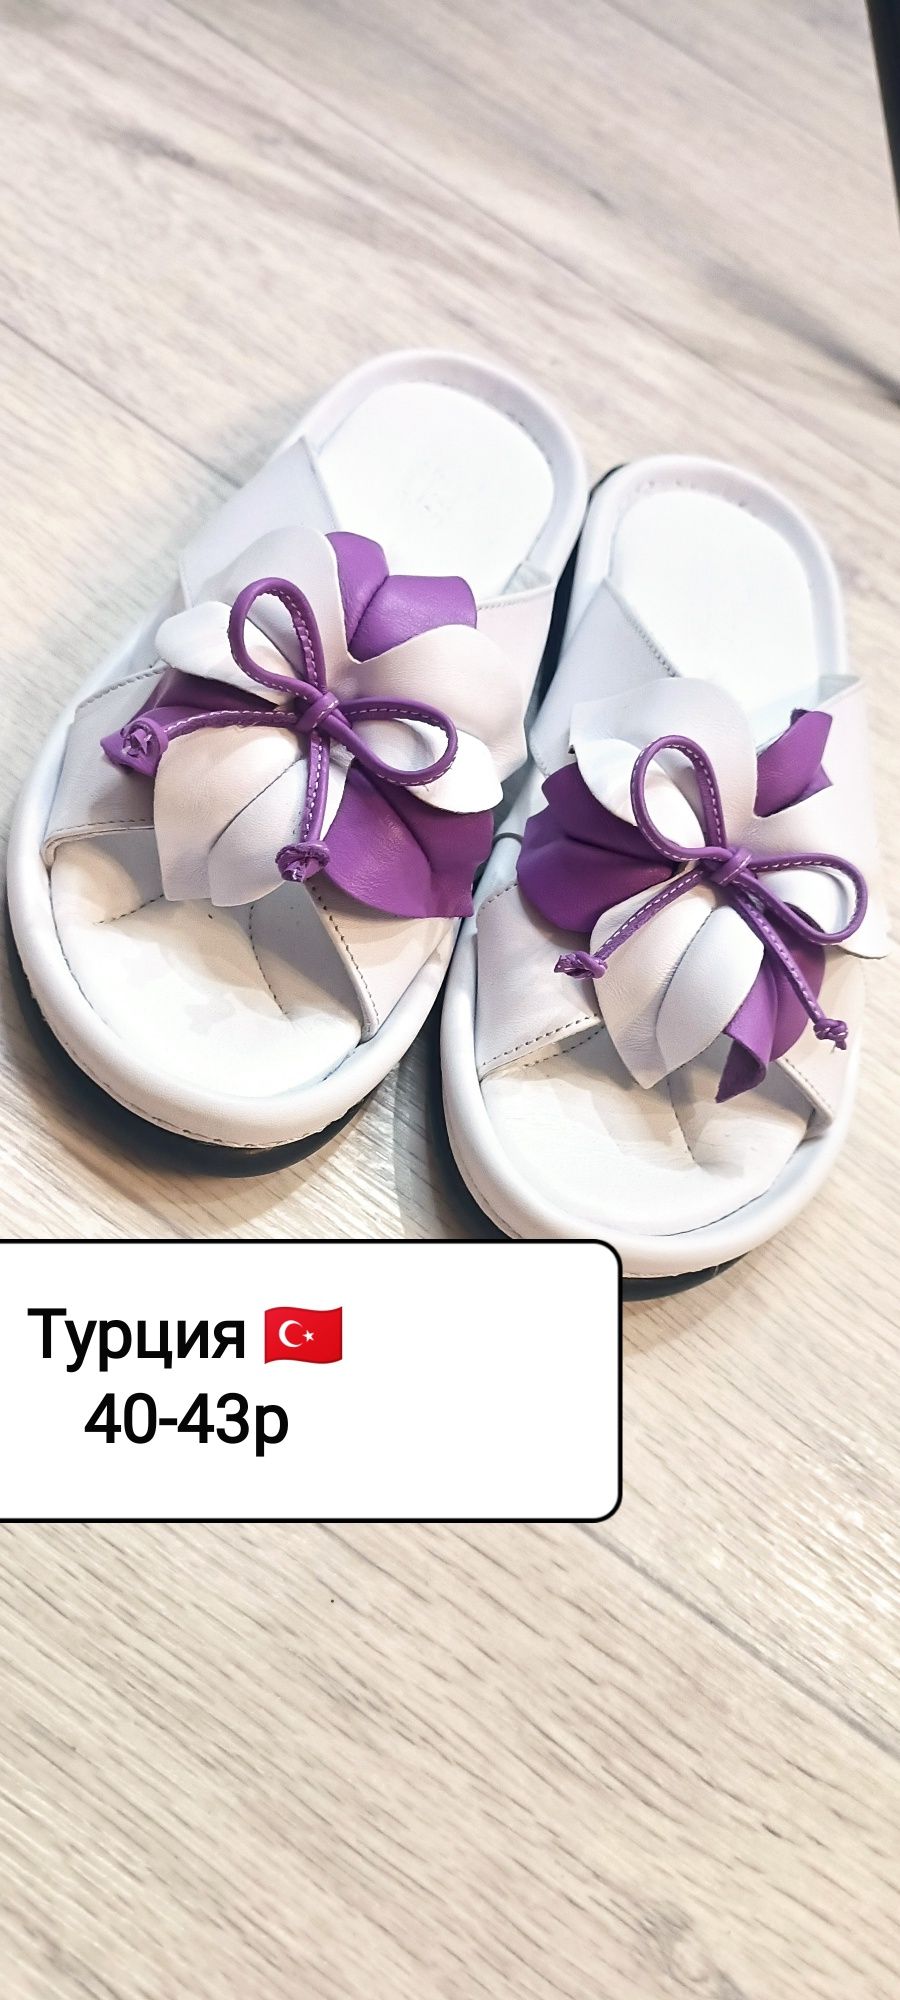 Обувь БОЛЬШИХ РАЗМЕРОВ производство Турция  качество отличное  кожа